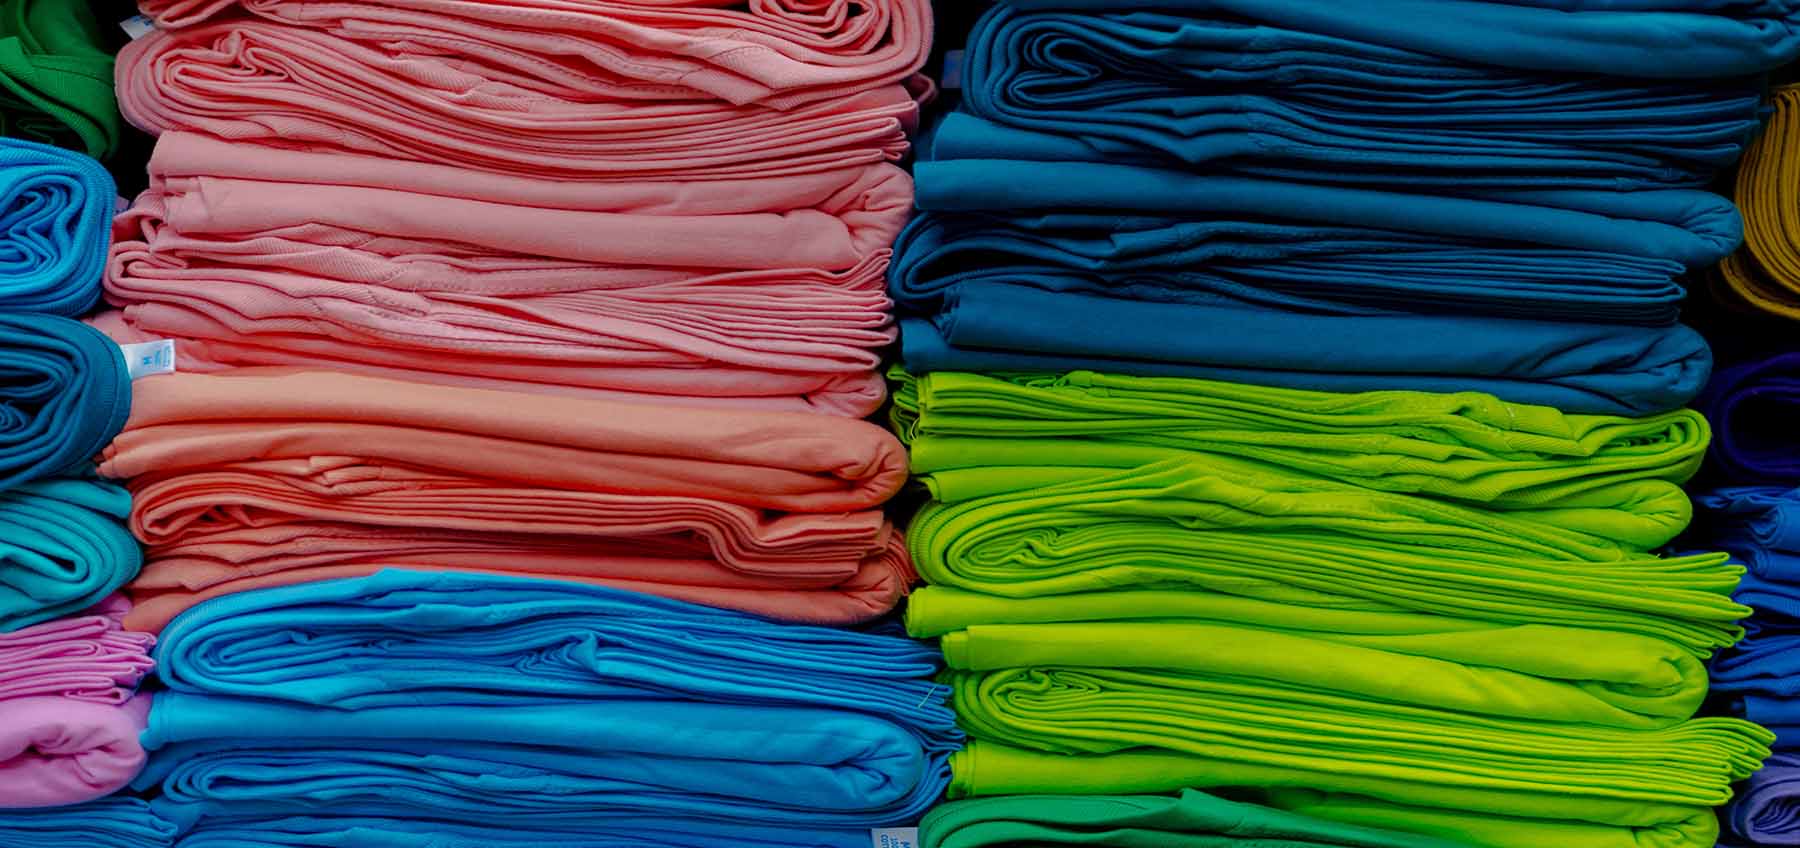 shirt wholesalers near me, plain bulk t shirts, buy shirt in bulk, ordering t shirts in bulk, t shirt bulk order